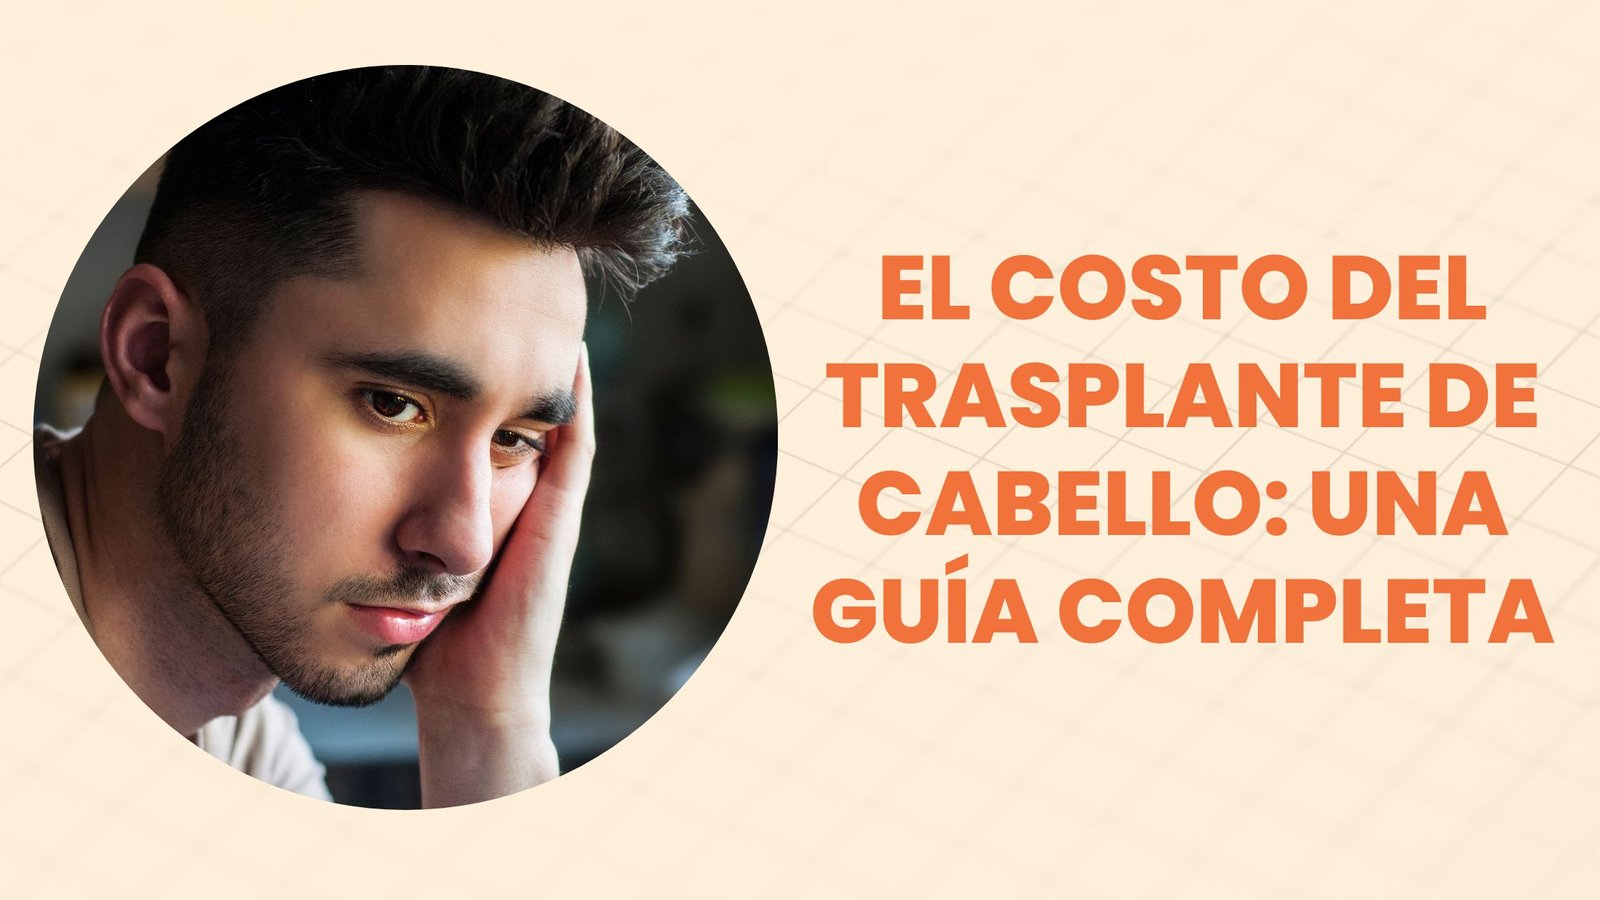 El costo del trasplante de cabello: una guía completa